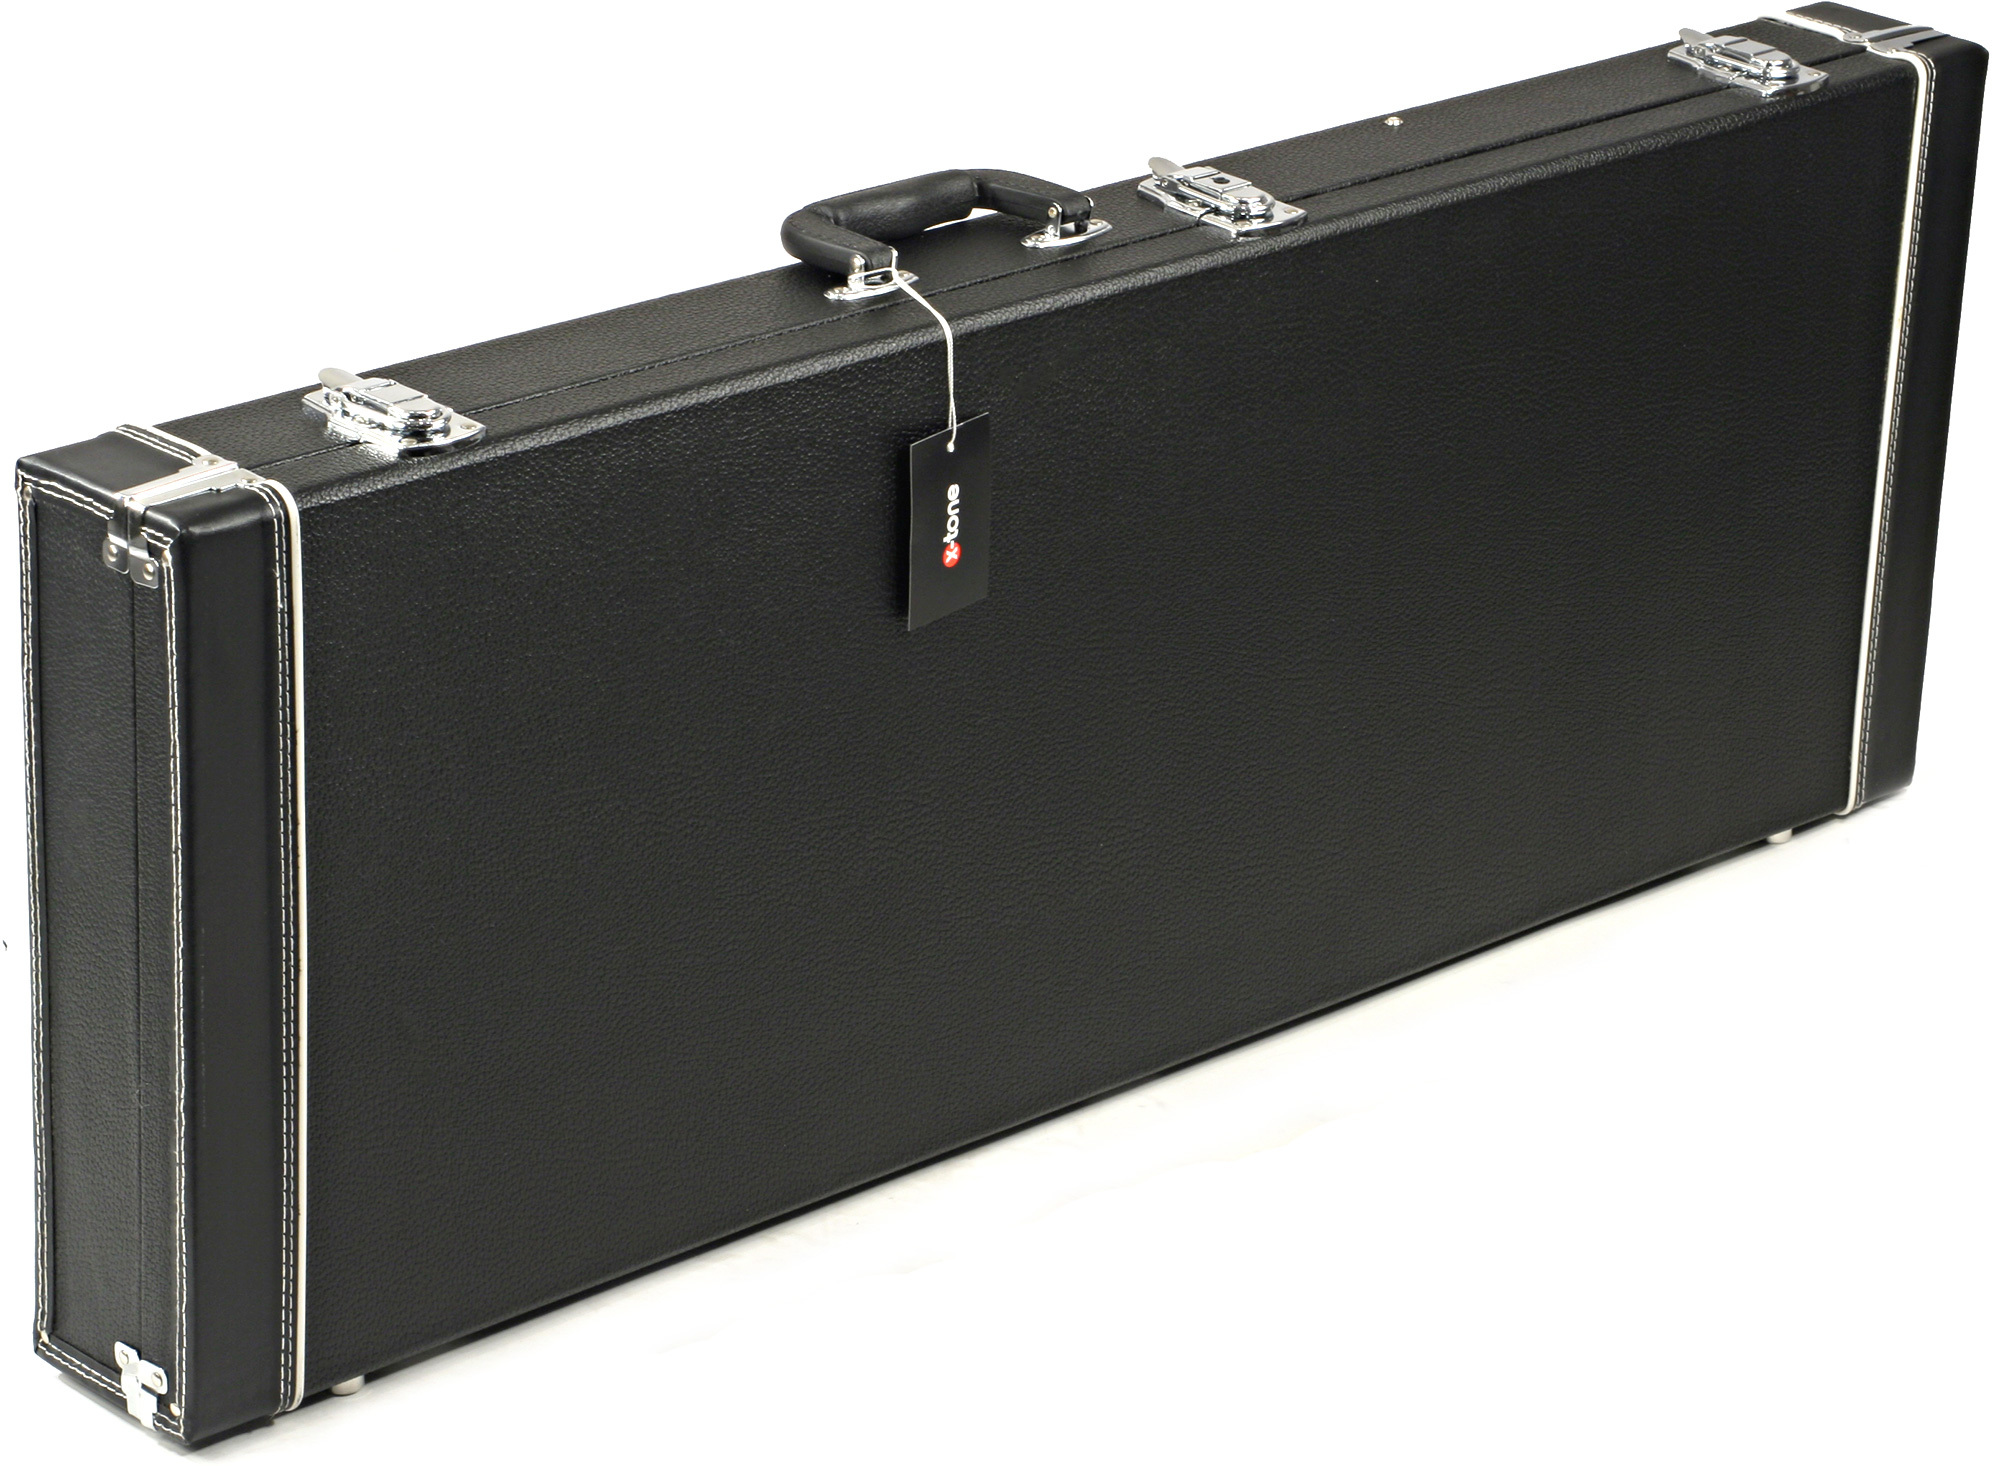 X-tone 1501 Standard Electrique Strat/tele Rectangulaire Black - Electric guitar case - Main picture